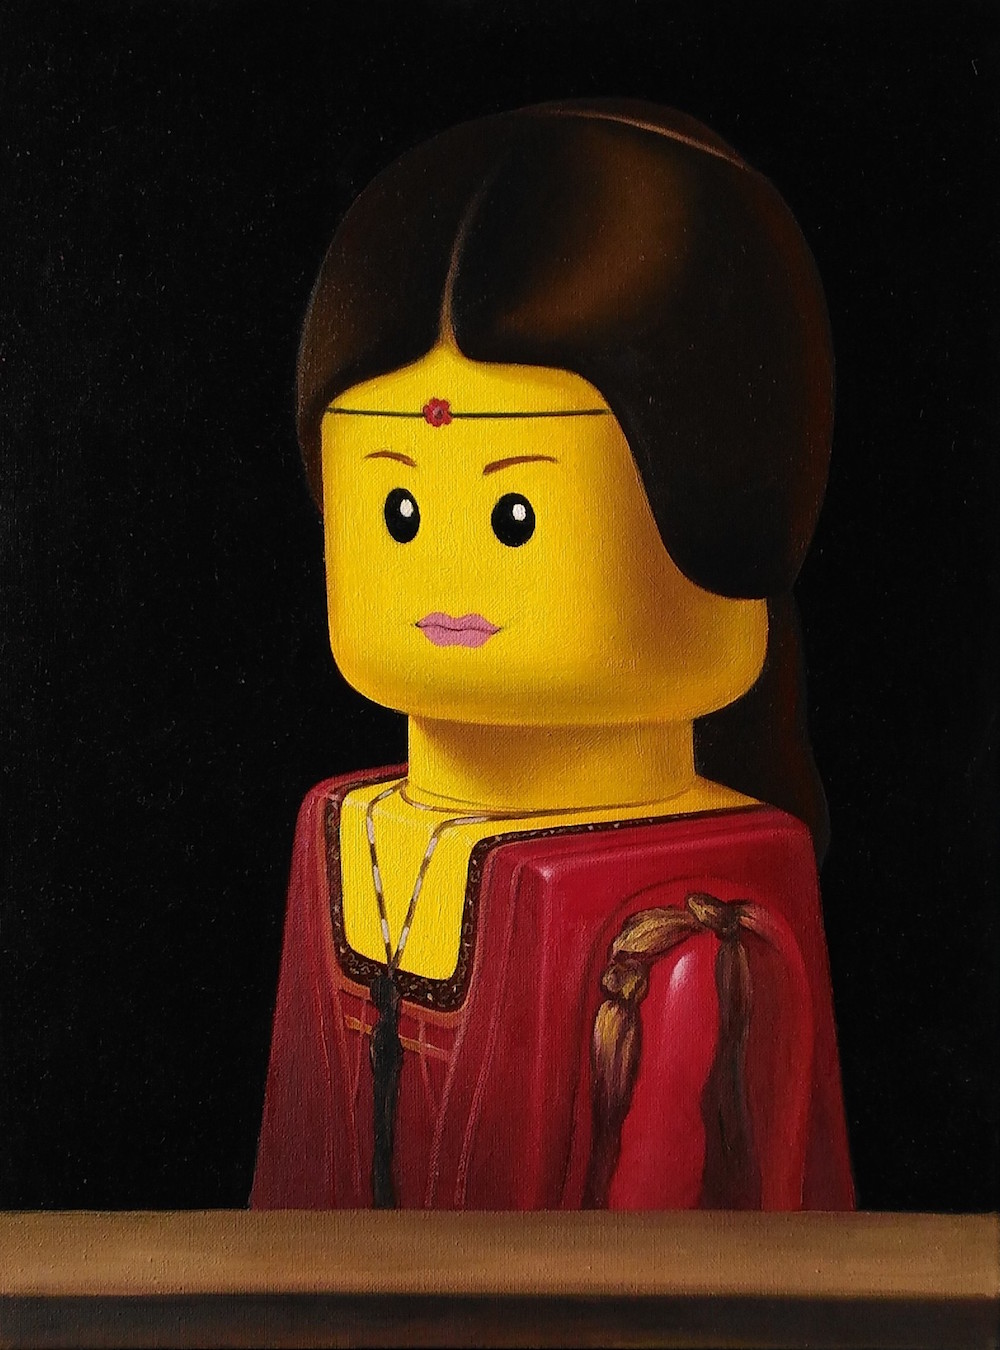 LEGO-ból álmodták újra a híres műalkotásokat